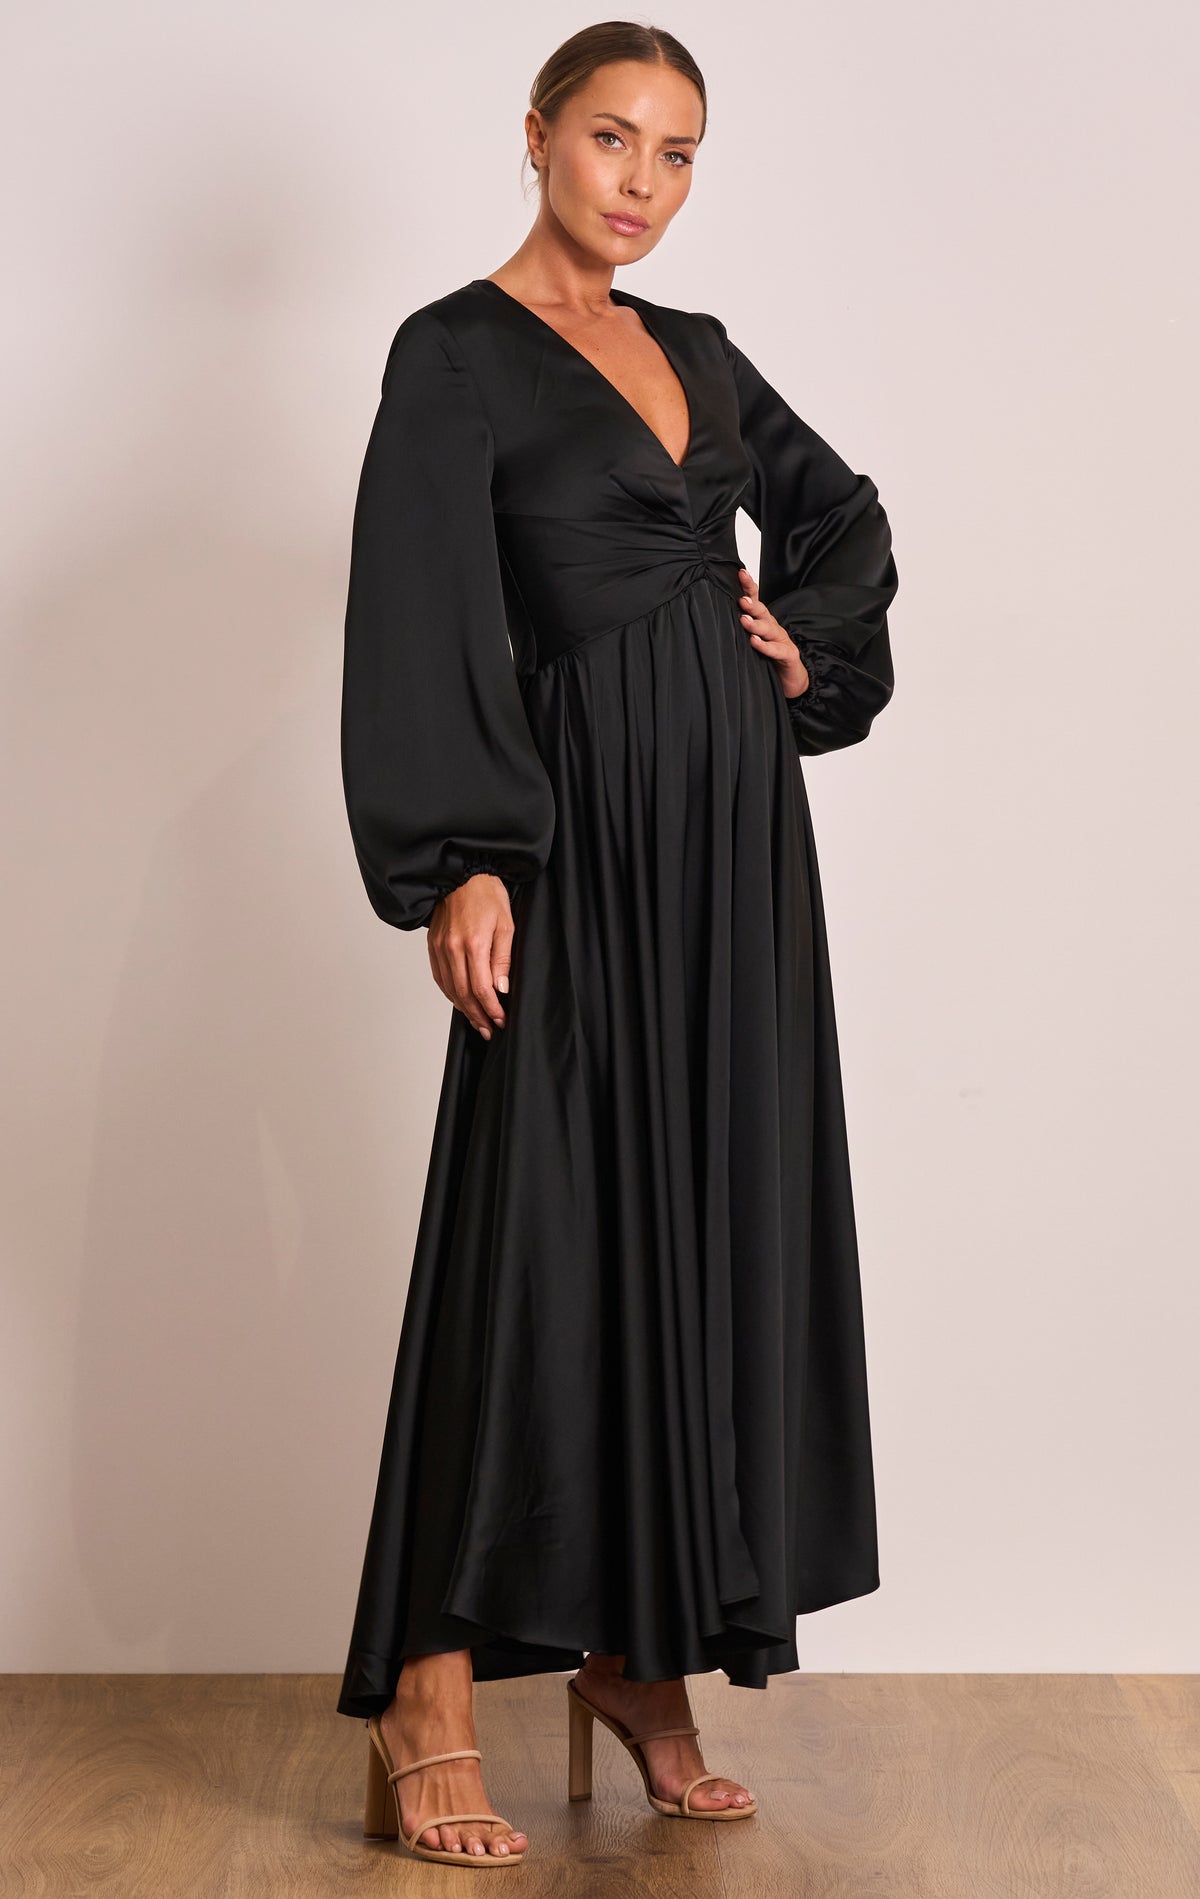 Pasduchas PASDUCHAS Lucia Sleeve Midi Dress (Black) - RRP $380 - PD101265_Black_2_1200x_c74cdf4b-d107-4691-99e7-e3c5f7f0489a.jpg